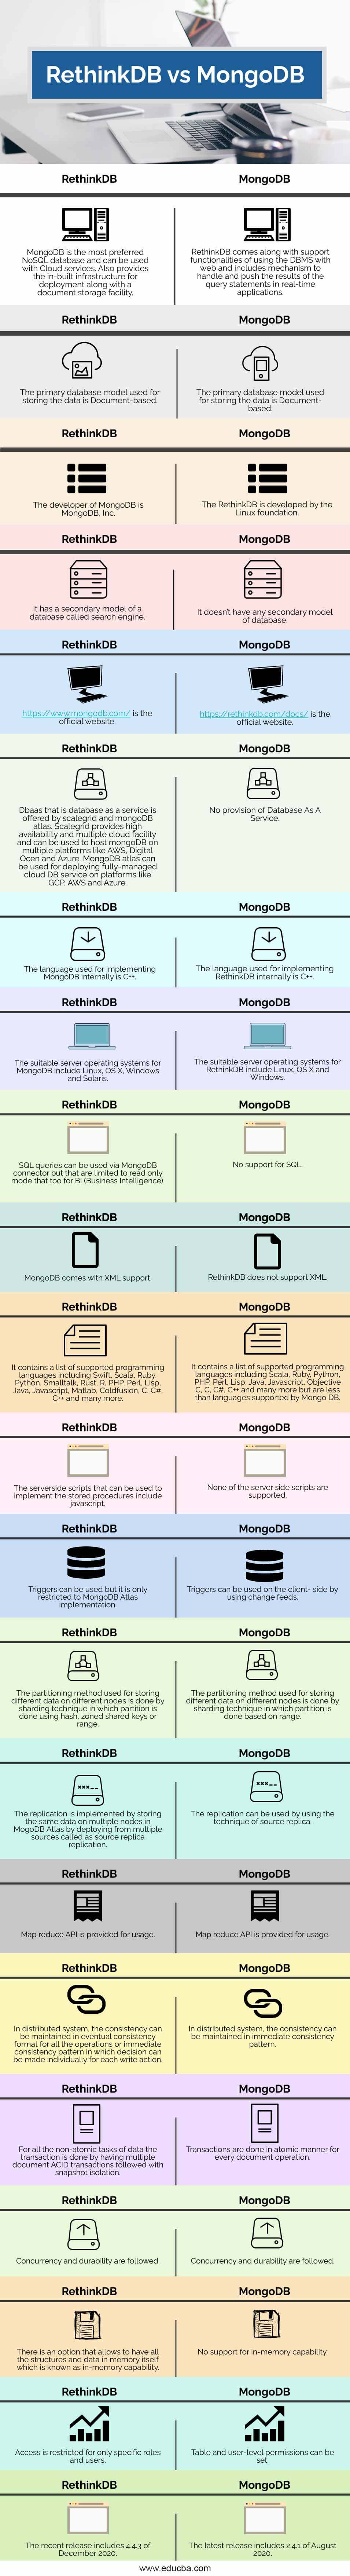 RethinkDB-vs-MongoDB-info